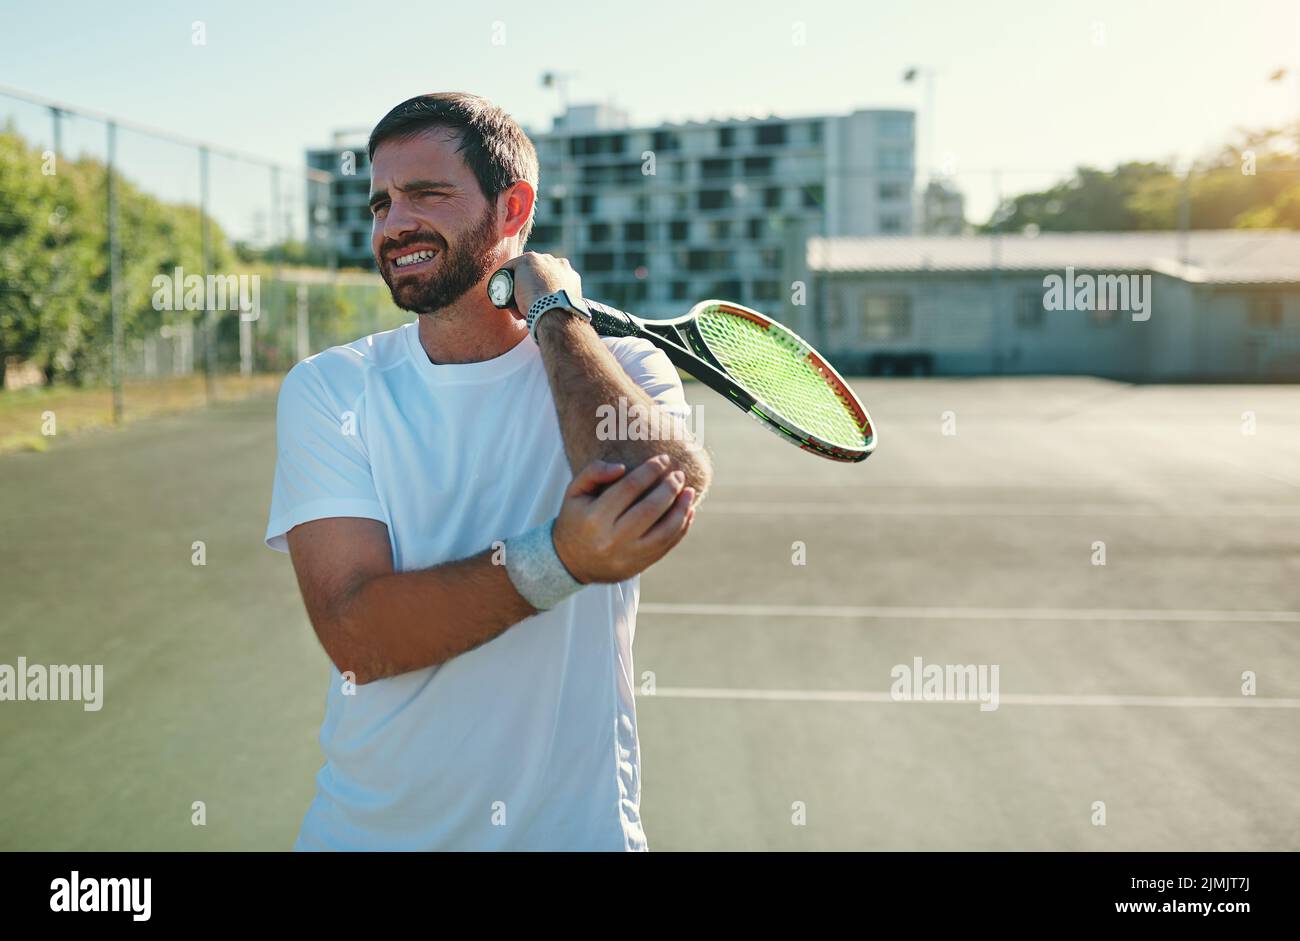 El codo de tenista puede ser causado por movimientos repetitivos de muñeca y brazo. Un hombre joven y deportivo que sostiene el codo con dolor mientras juega al tenis en una cancha de tenis. Foto de stock